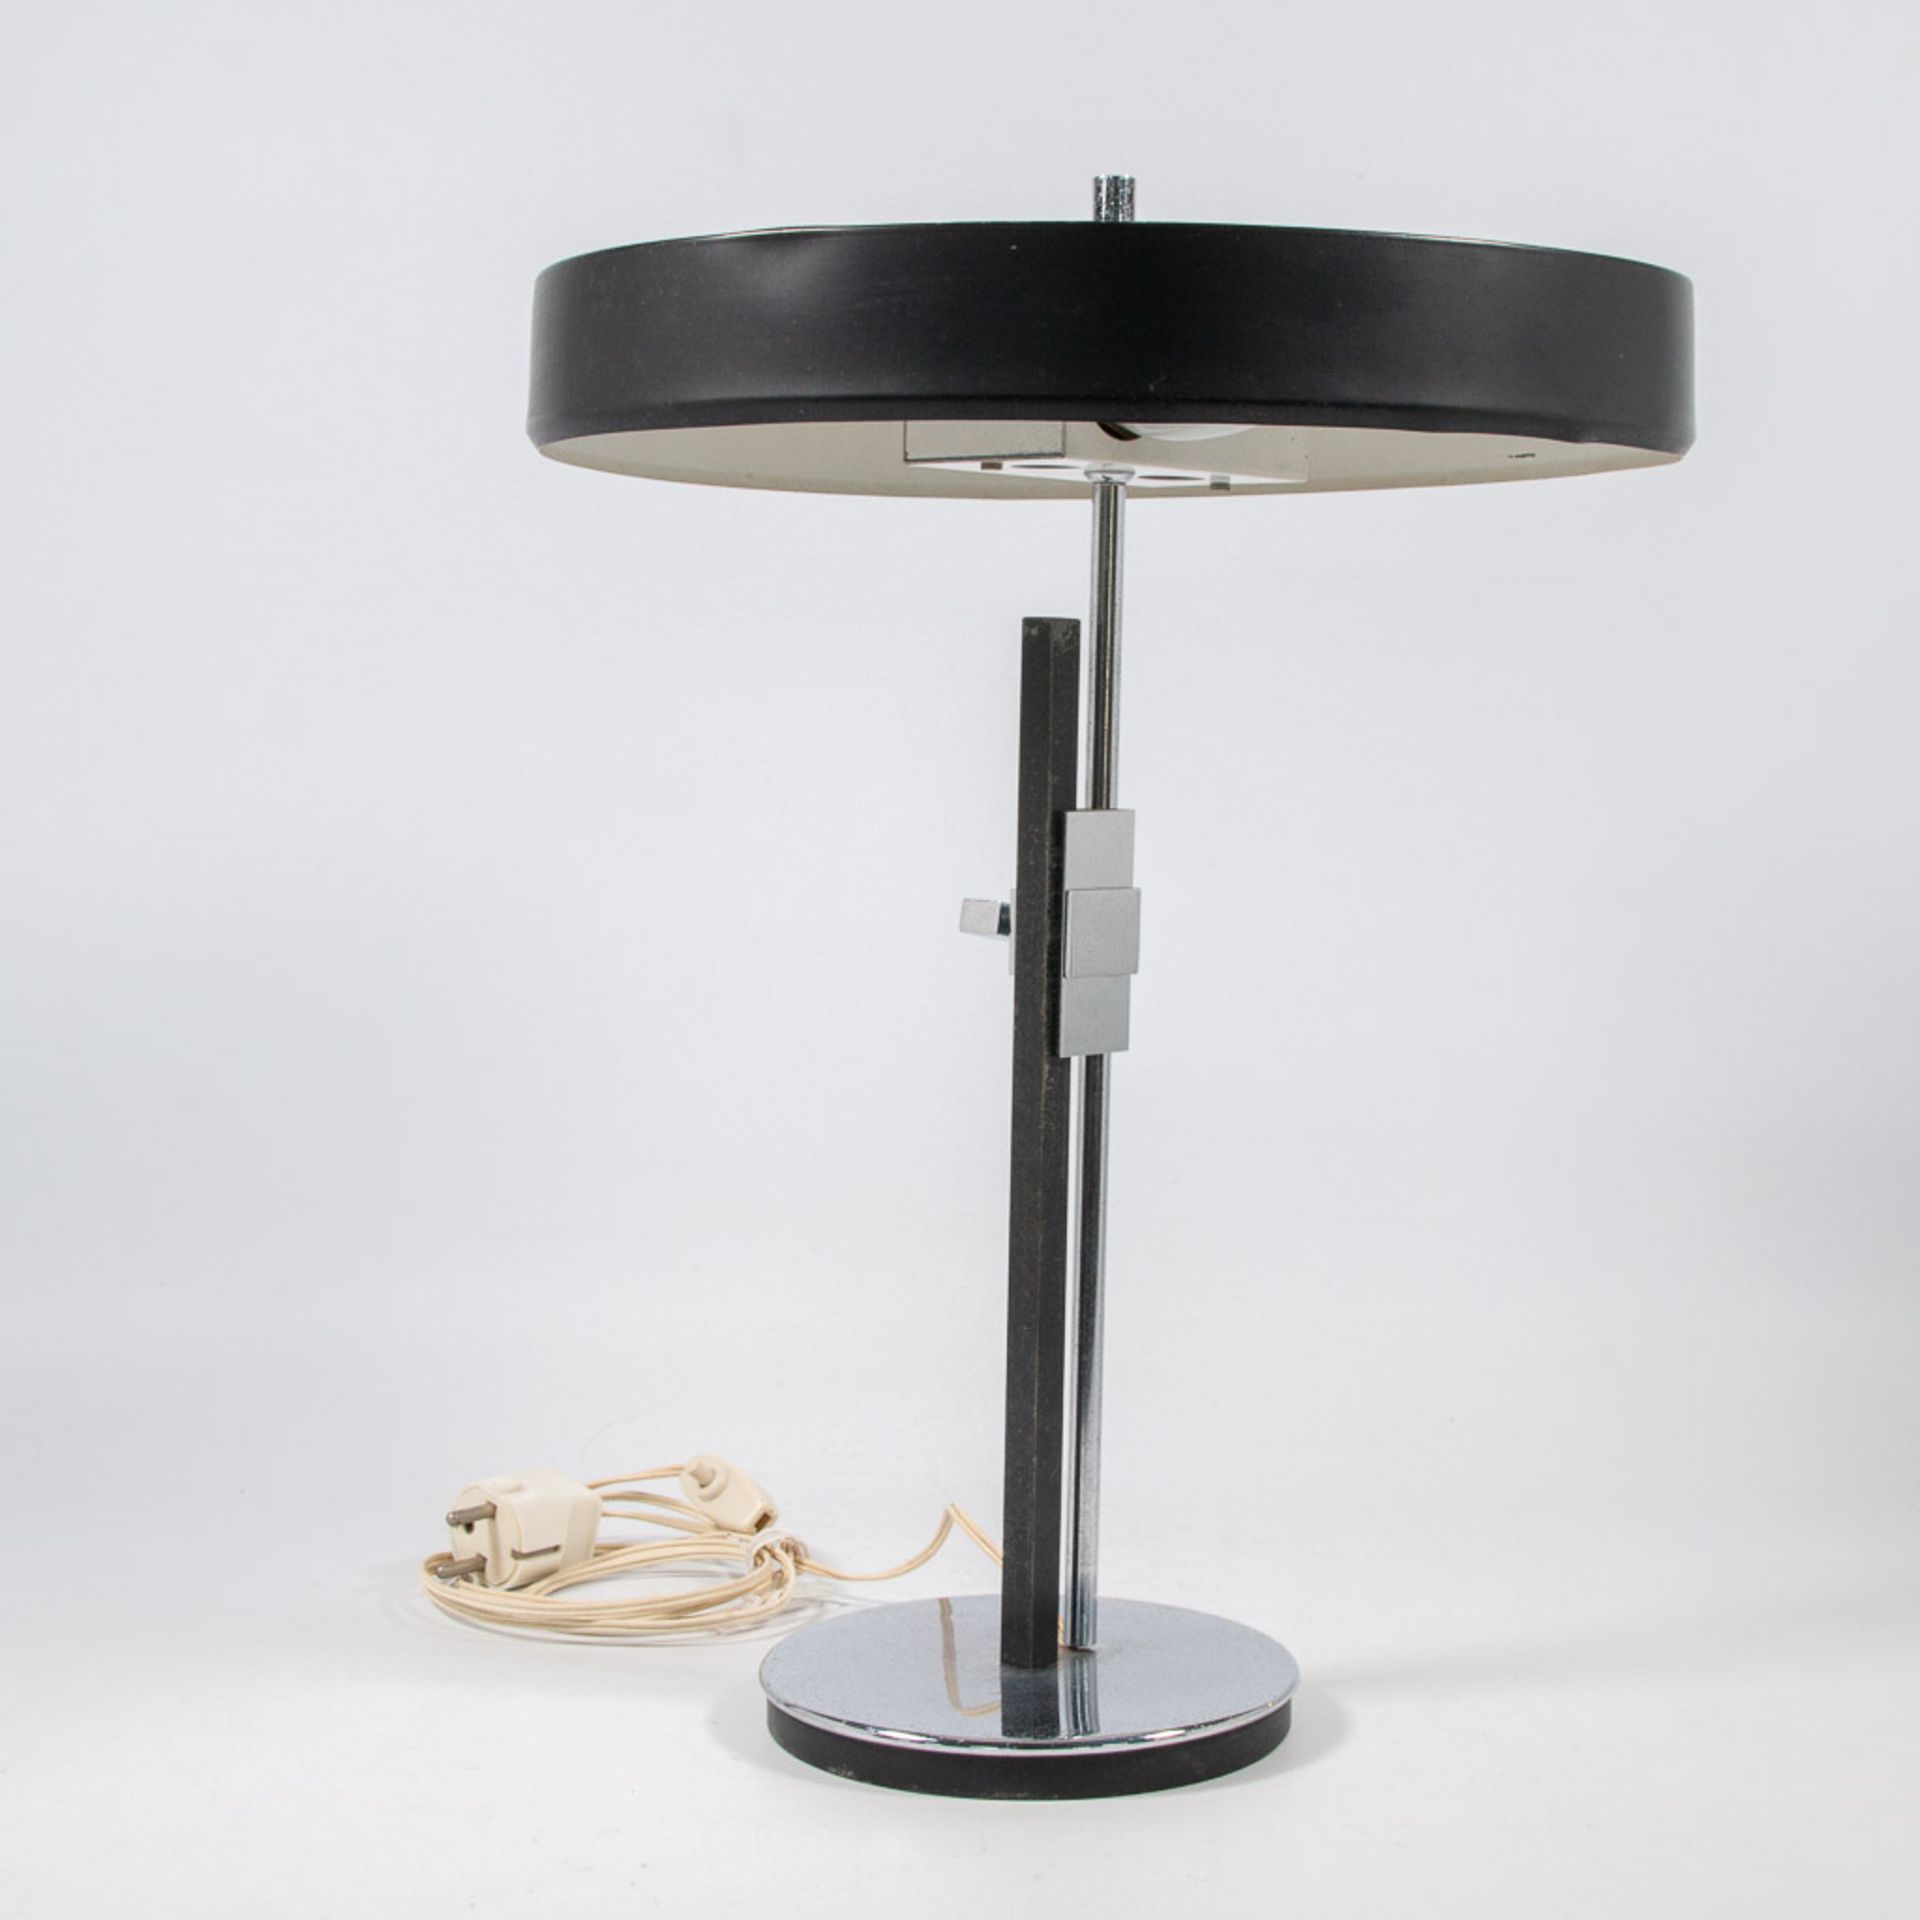 Louis Christian KALFF (1897-1976) A vintage desk lamp